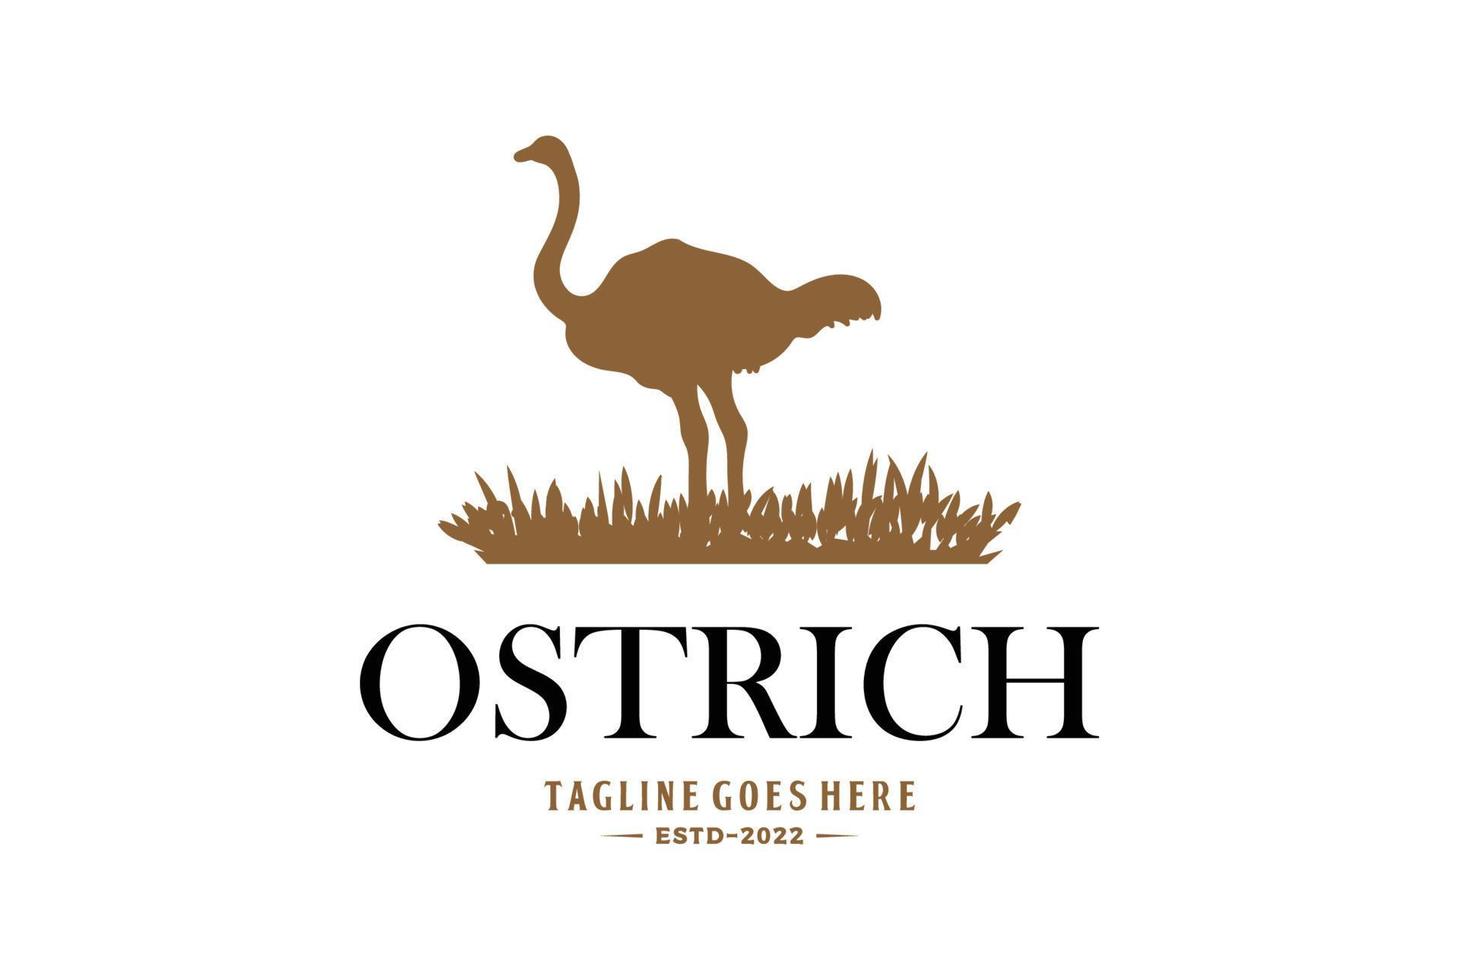 silueta de avestruz retro vintage con diseño de logotipo de pastizales vector